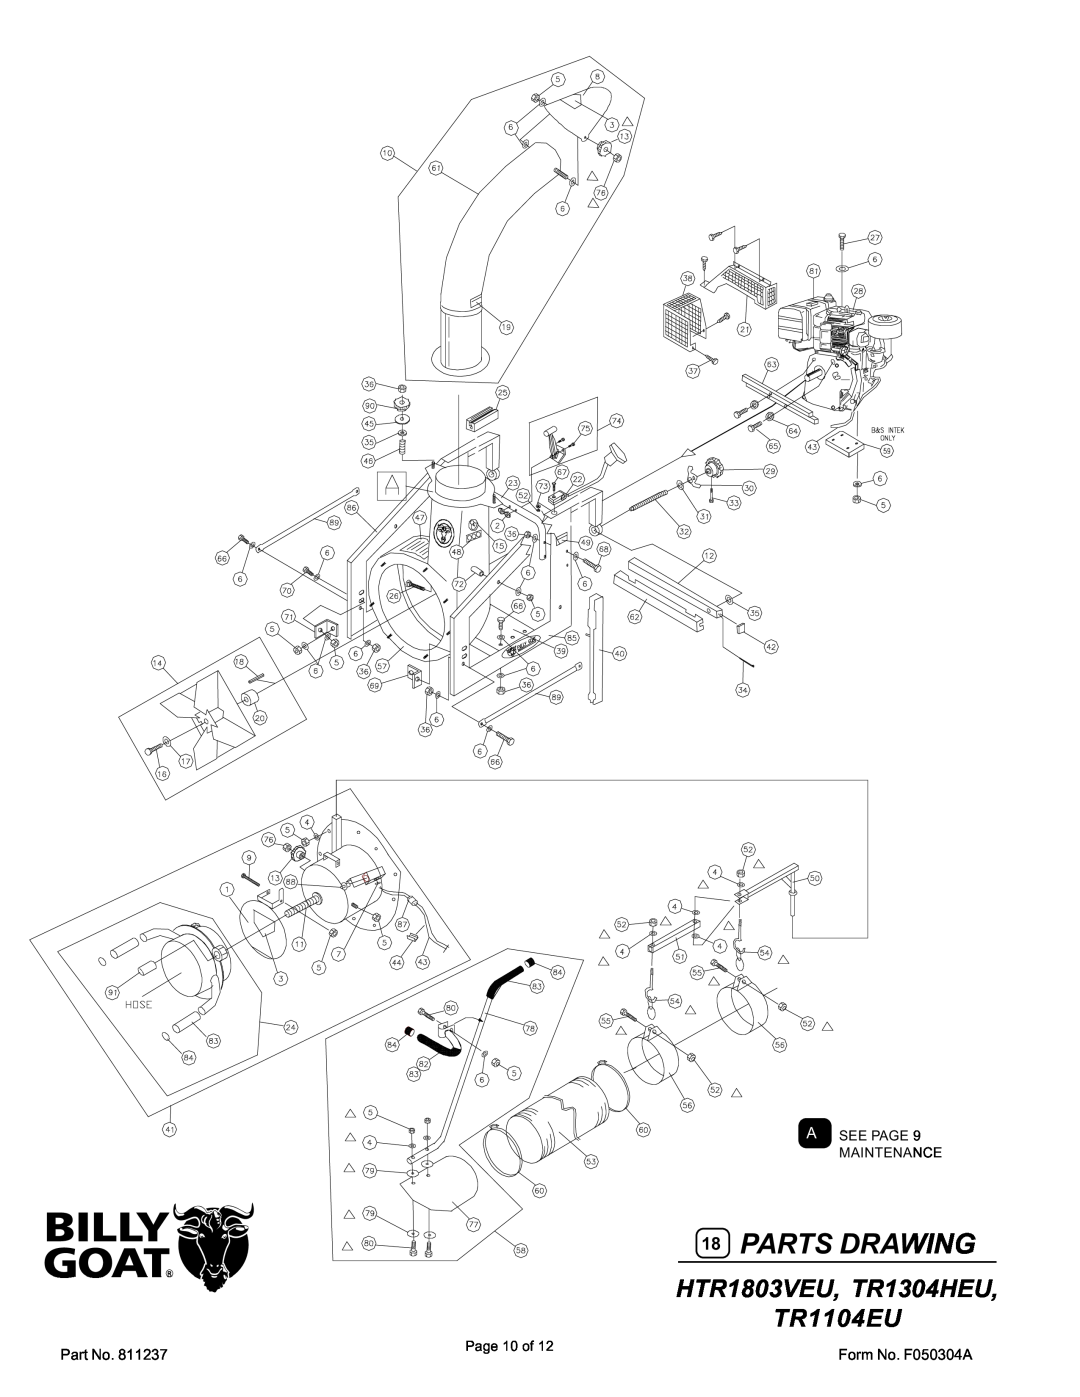 Billy Goat specifications Parts Drawing, HTR1803VEU, TR1304HEU TR1104EU 